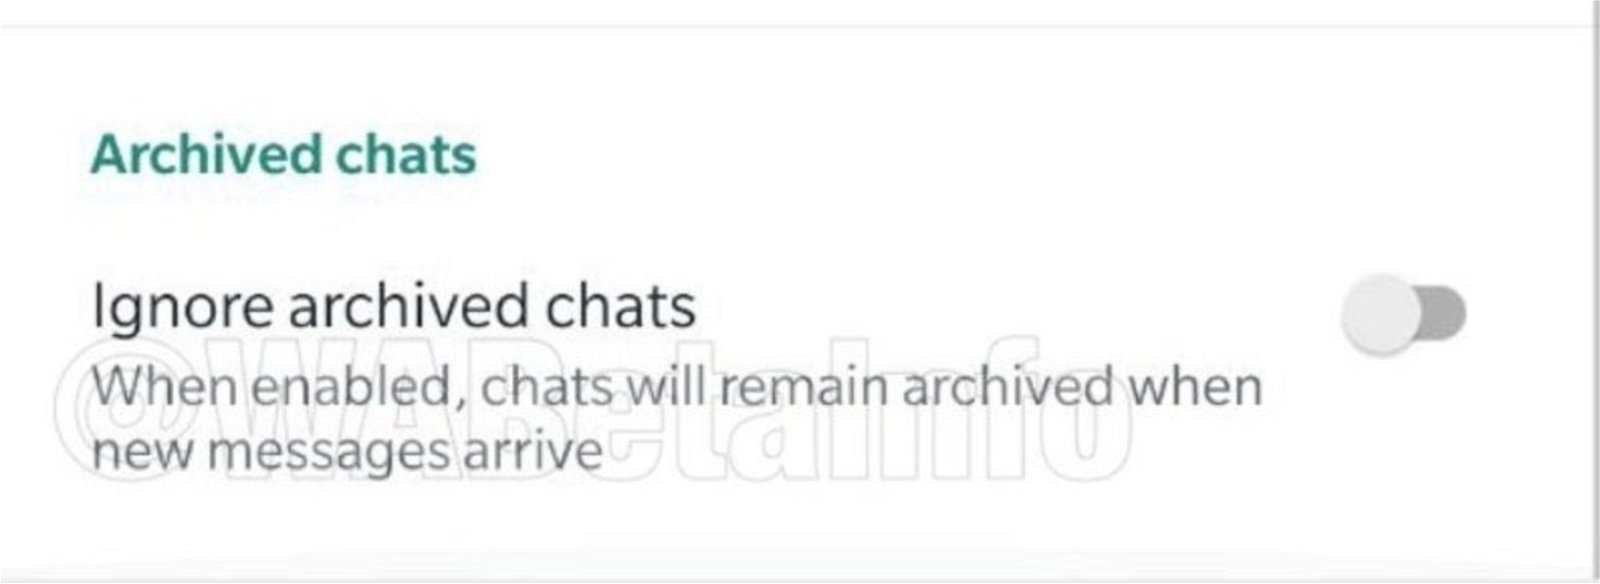 Ignorar chats archivados en WhatsApp